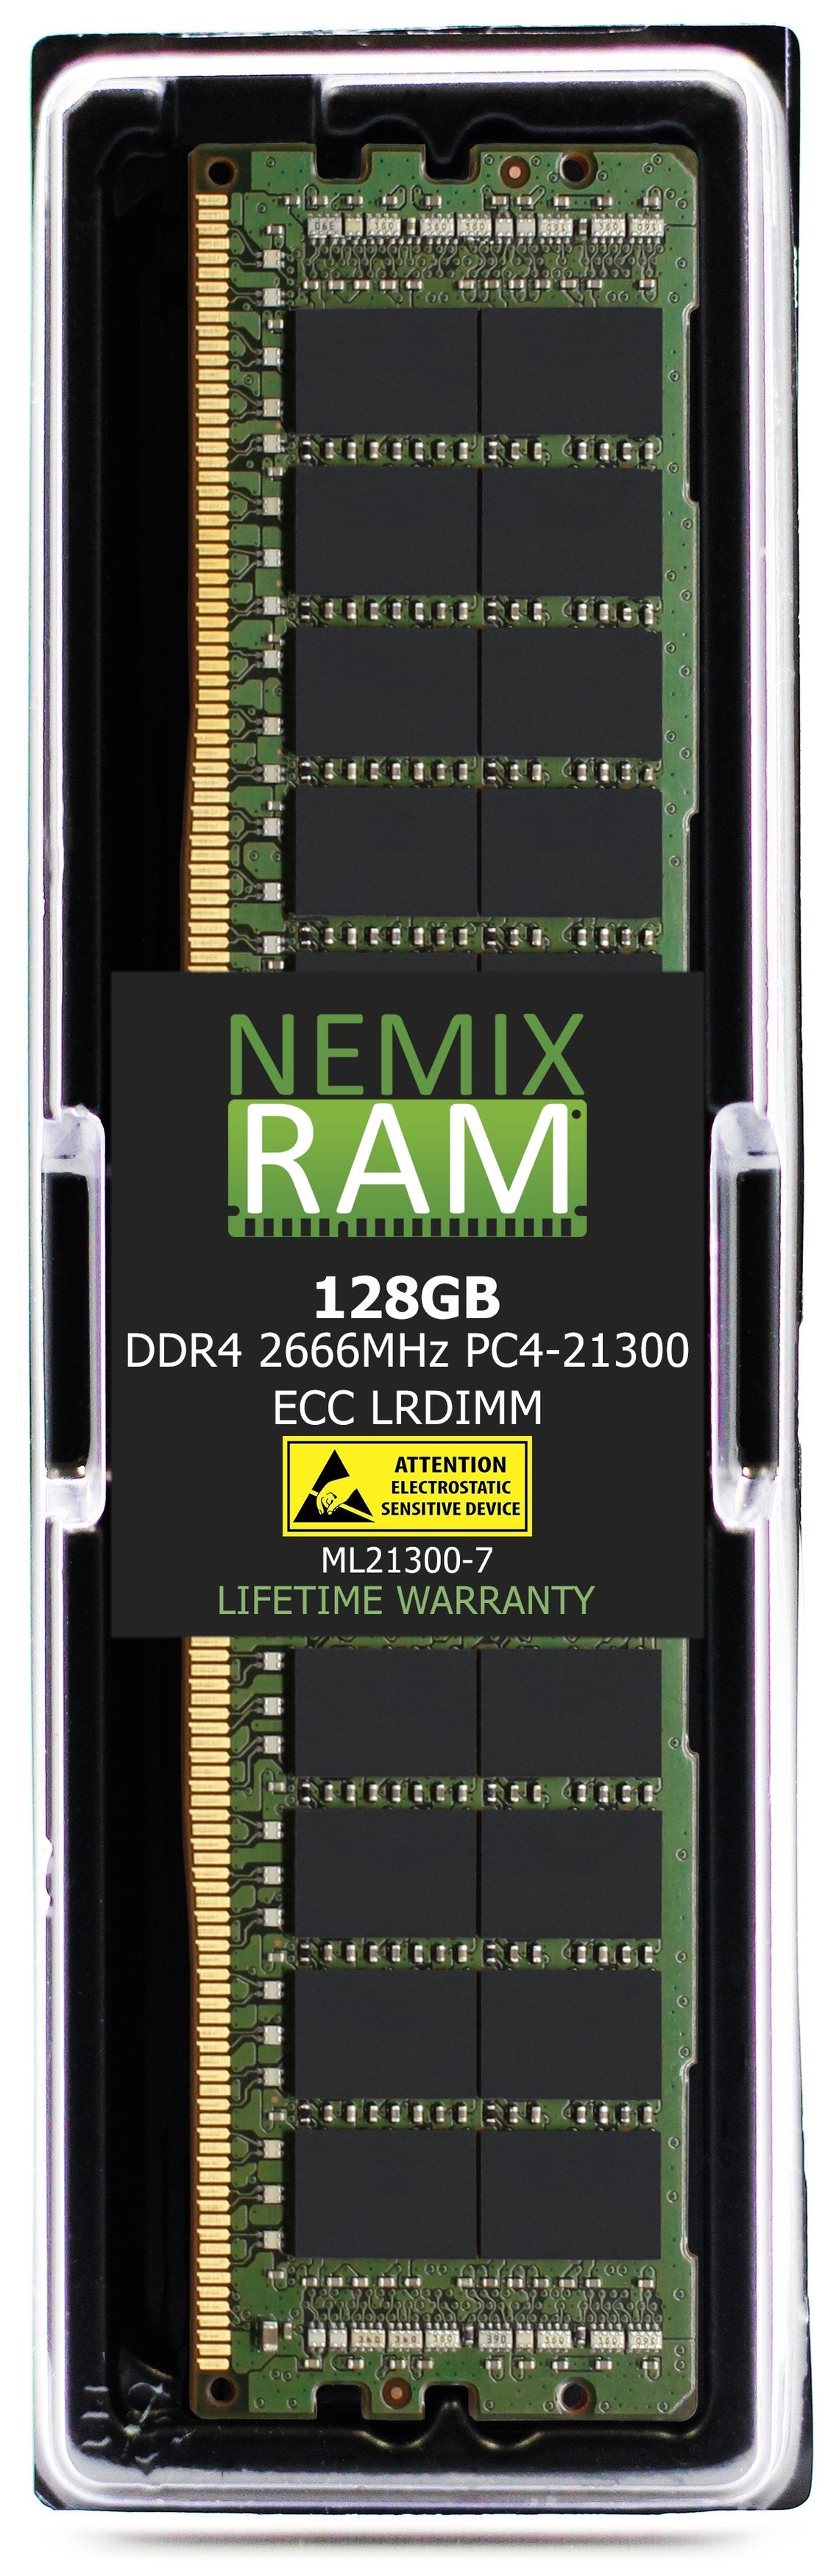 Hynix HMABAGL7M4R4N-VN 128GB DDR4 2666MHZ PC4-21300 LRDIMM Compatible Memory Module